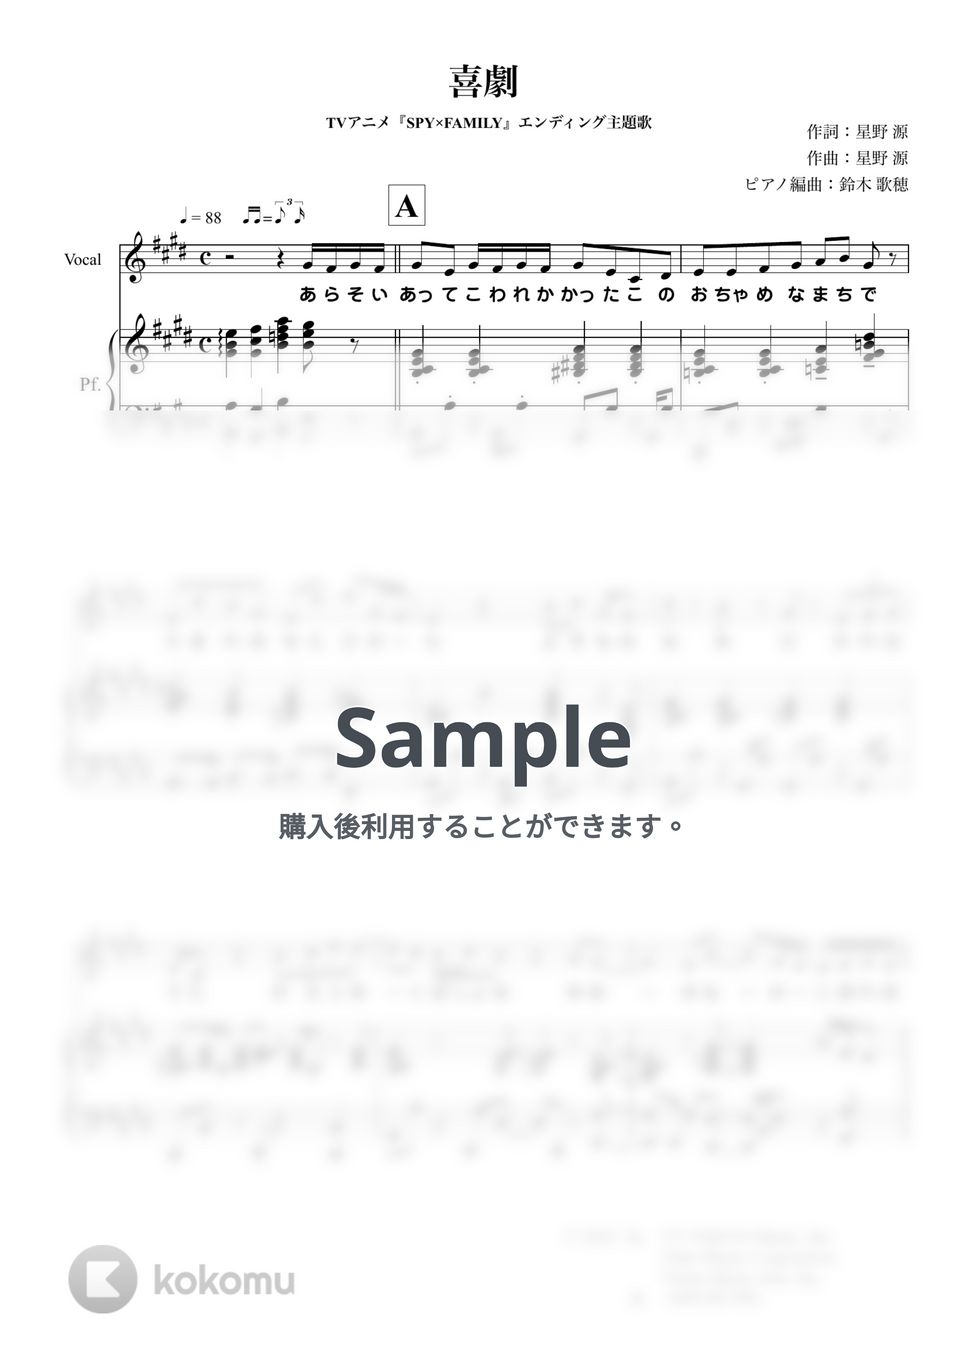 星野源 - 喜劇 (ピアノ弾き語り/『SPY×FAMILY』) by 鈴木 歌穂【ピアノ弾き語り】